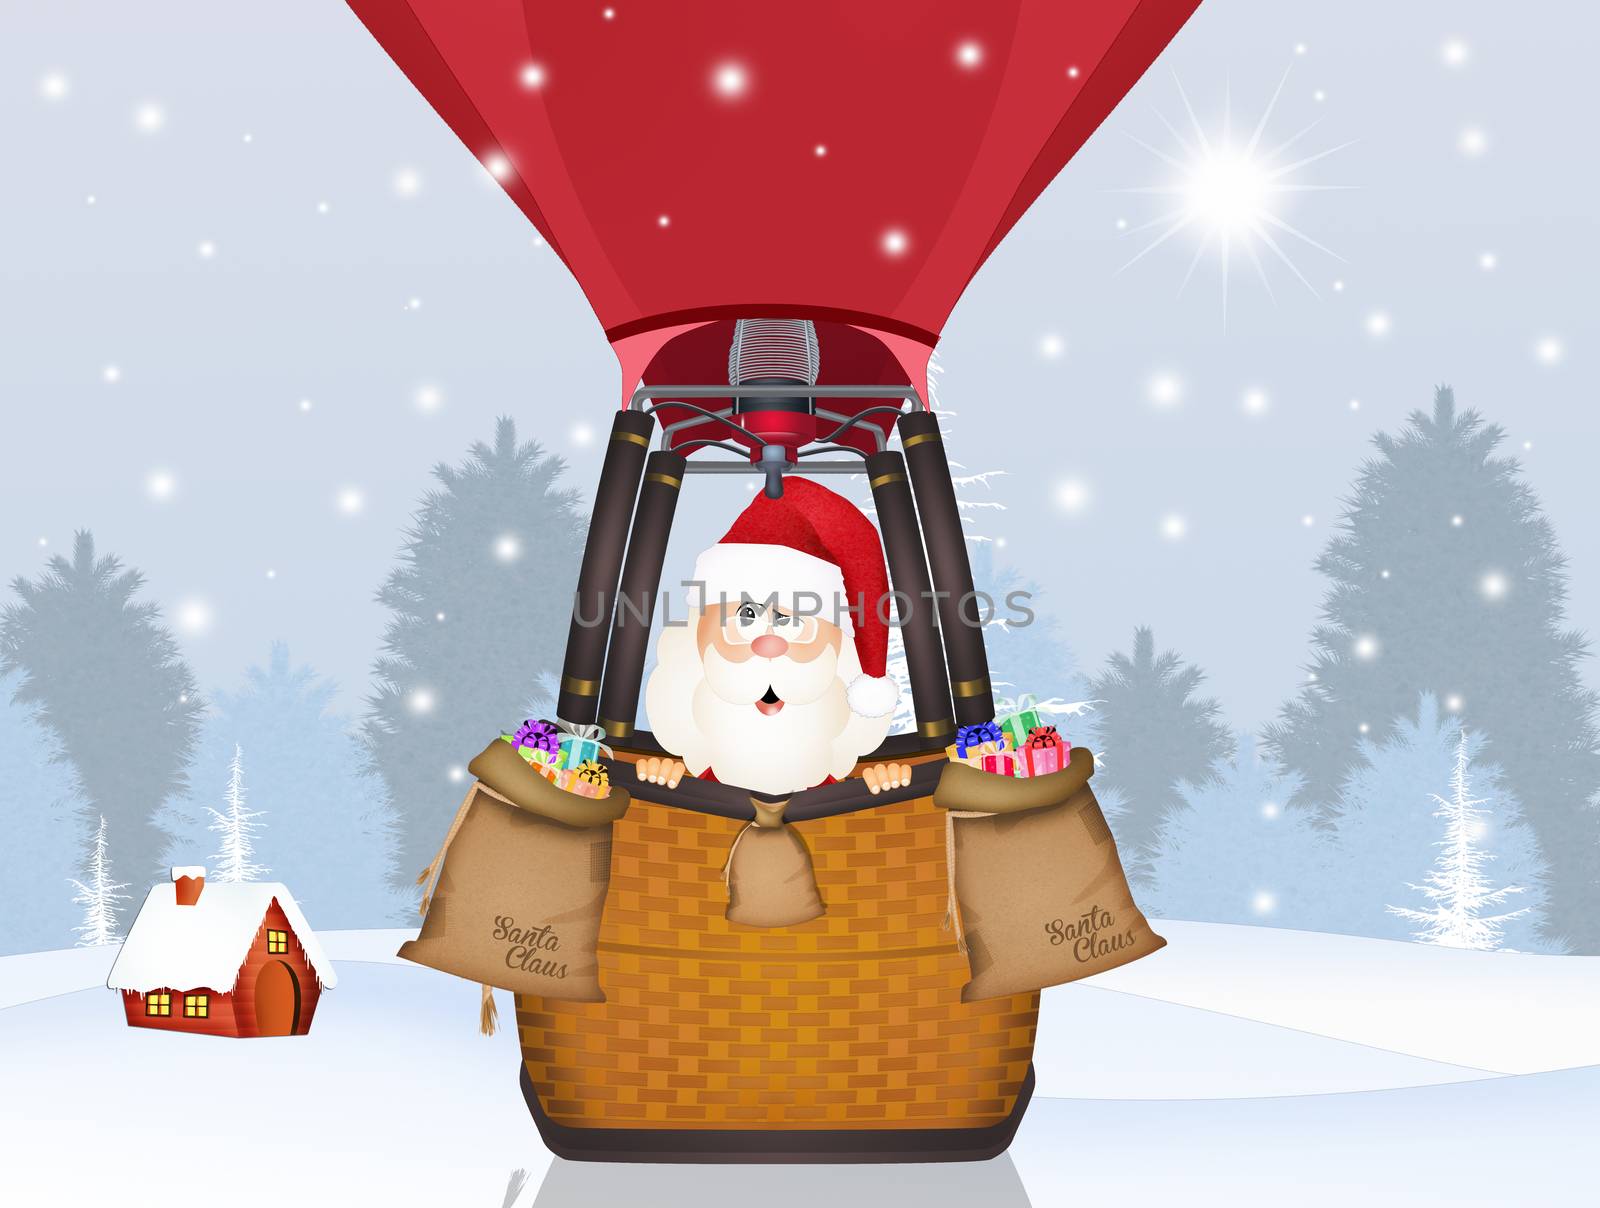 Santa Claus on hot air balloon by adrenalina